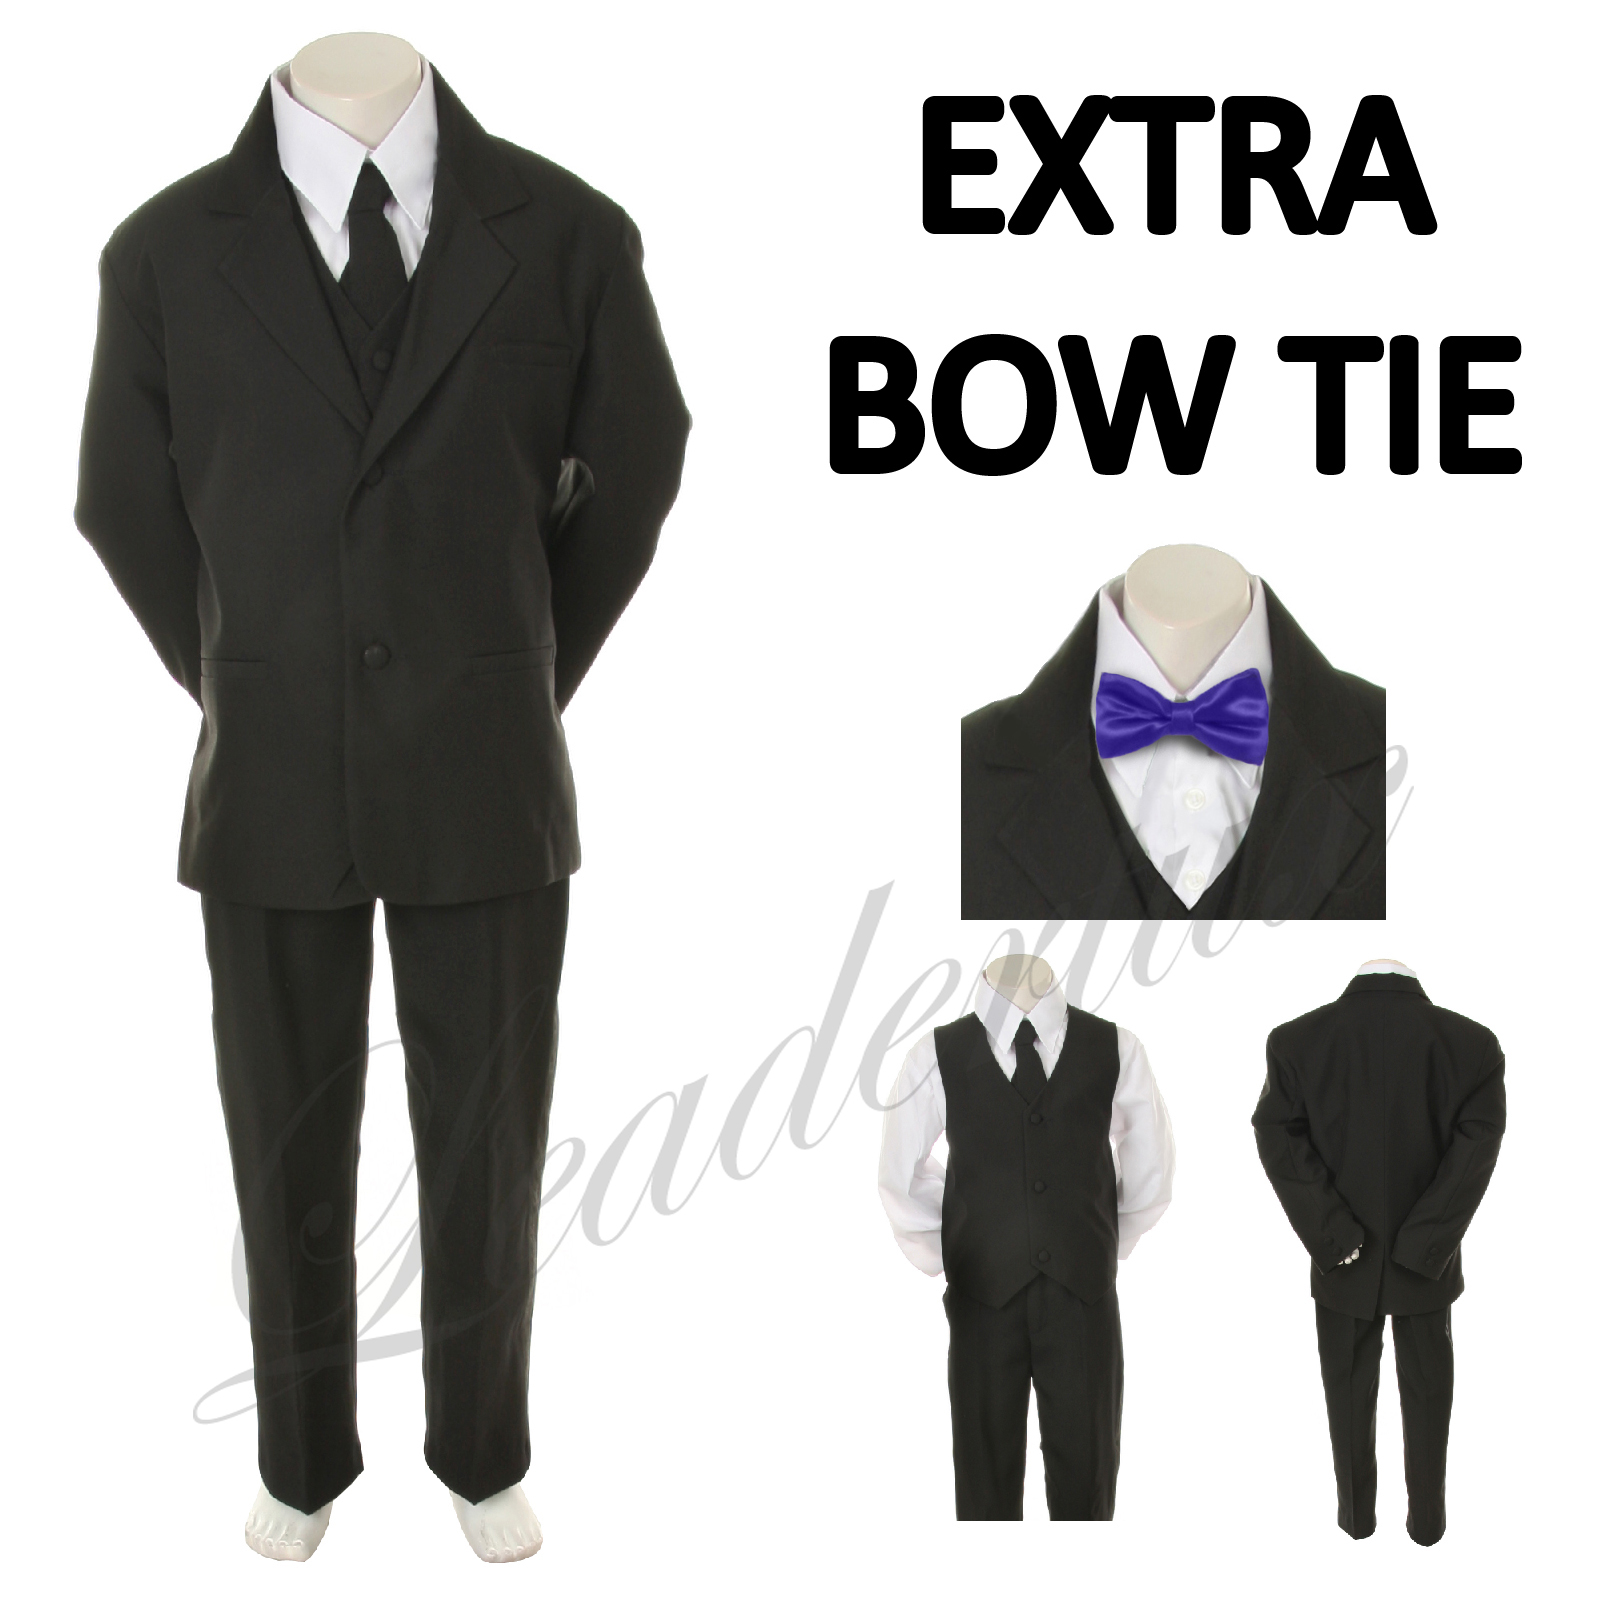 Leadertux 5 6 7 Child Kid Black Formal Wedding Party Boy Suit Tuxedo Outfit 6pc Set+ Purple Bow Tie